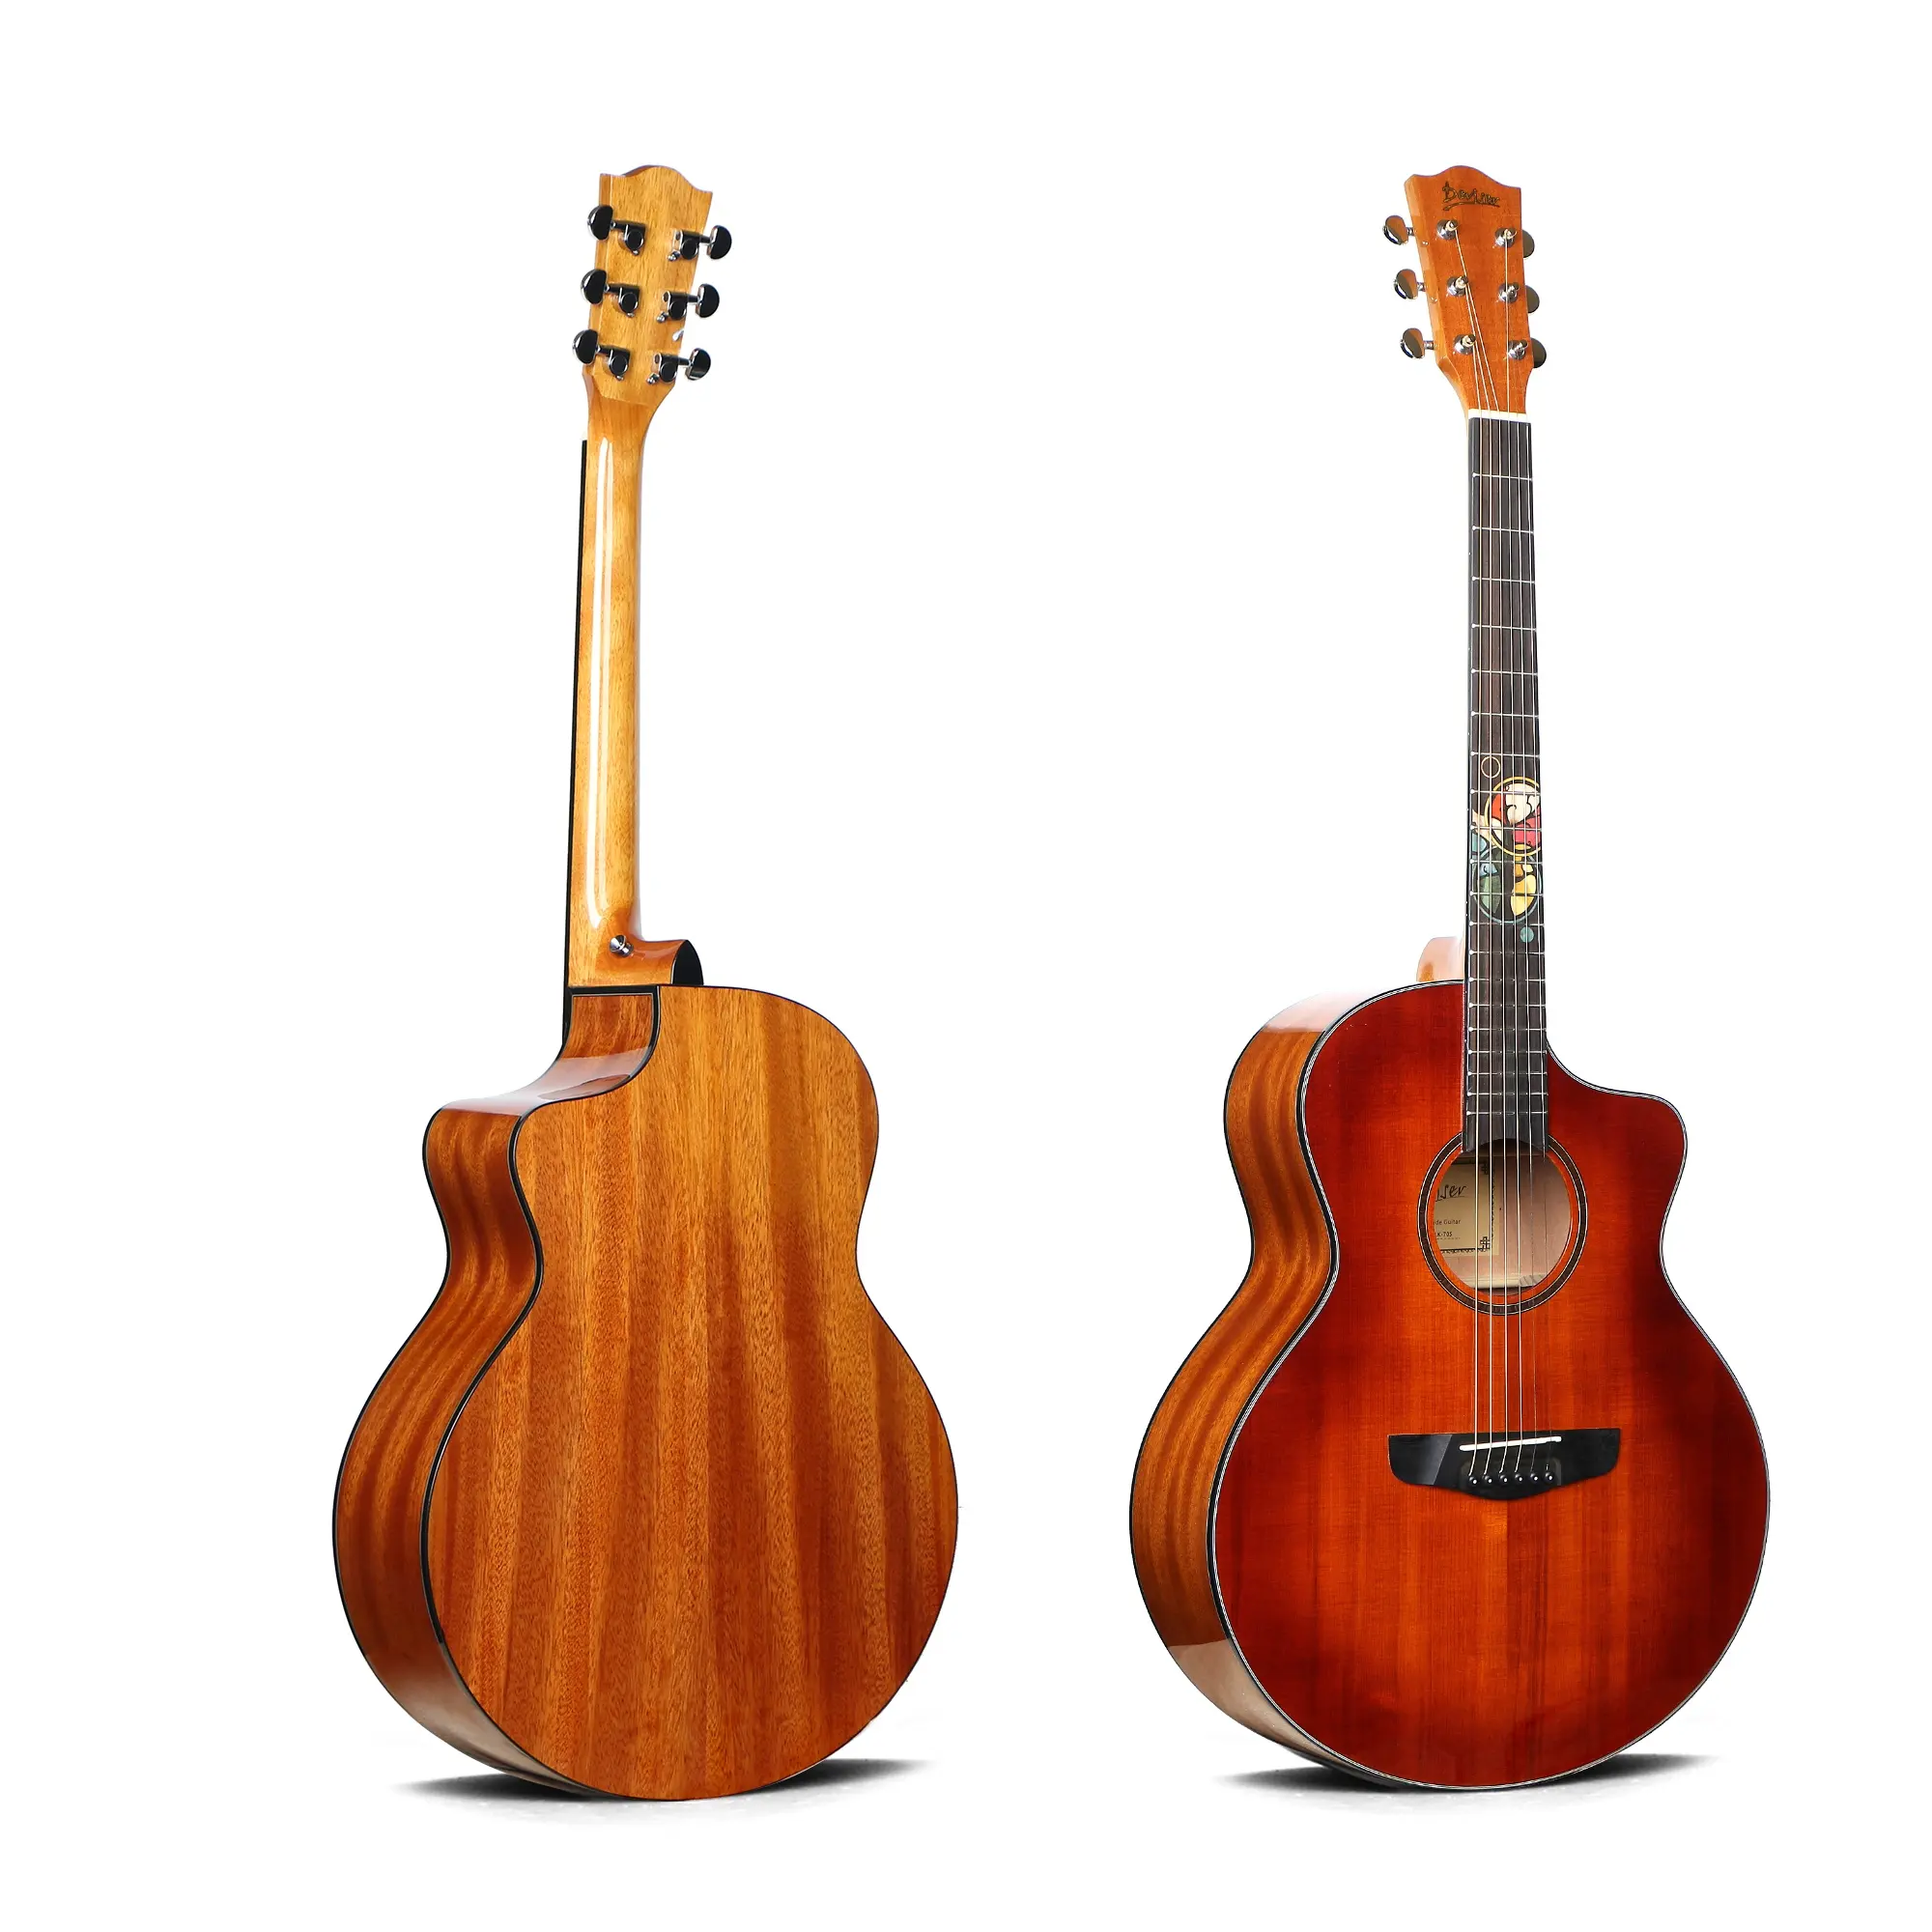 Deviserトップソリッドギター40インチOEM顧客ロゴ卸売ギターL-70S